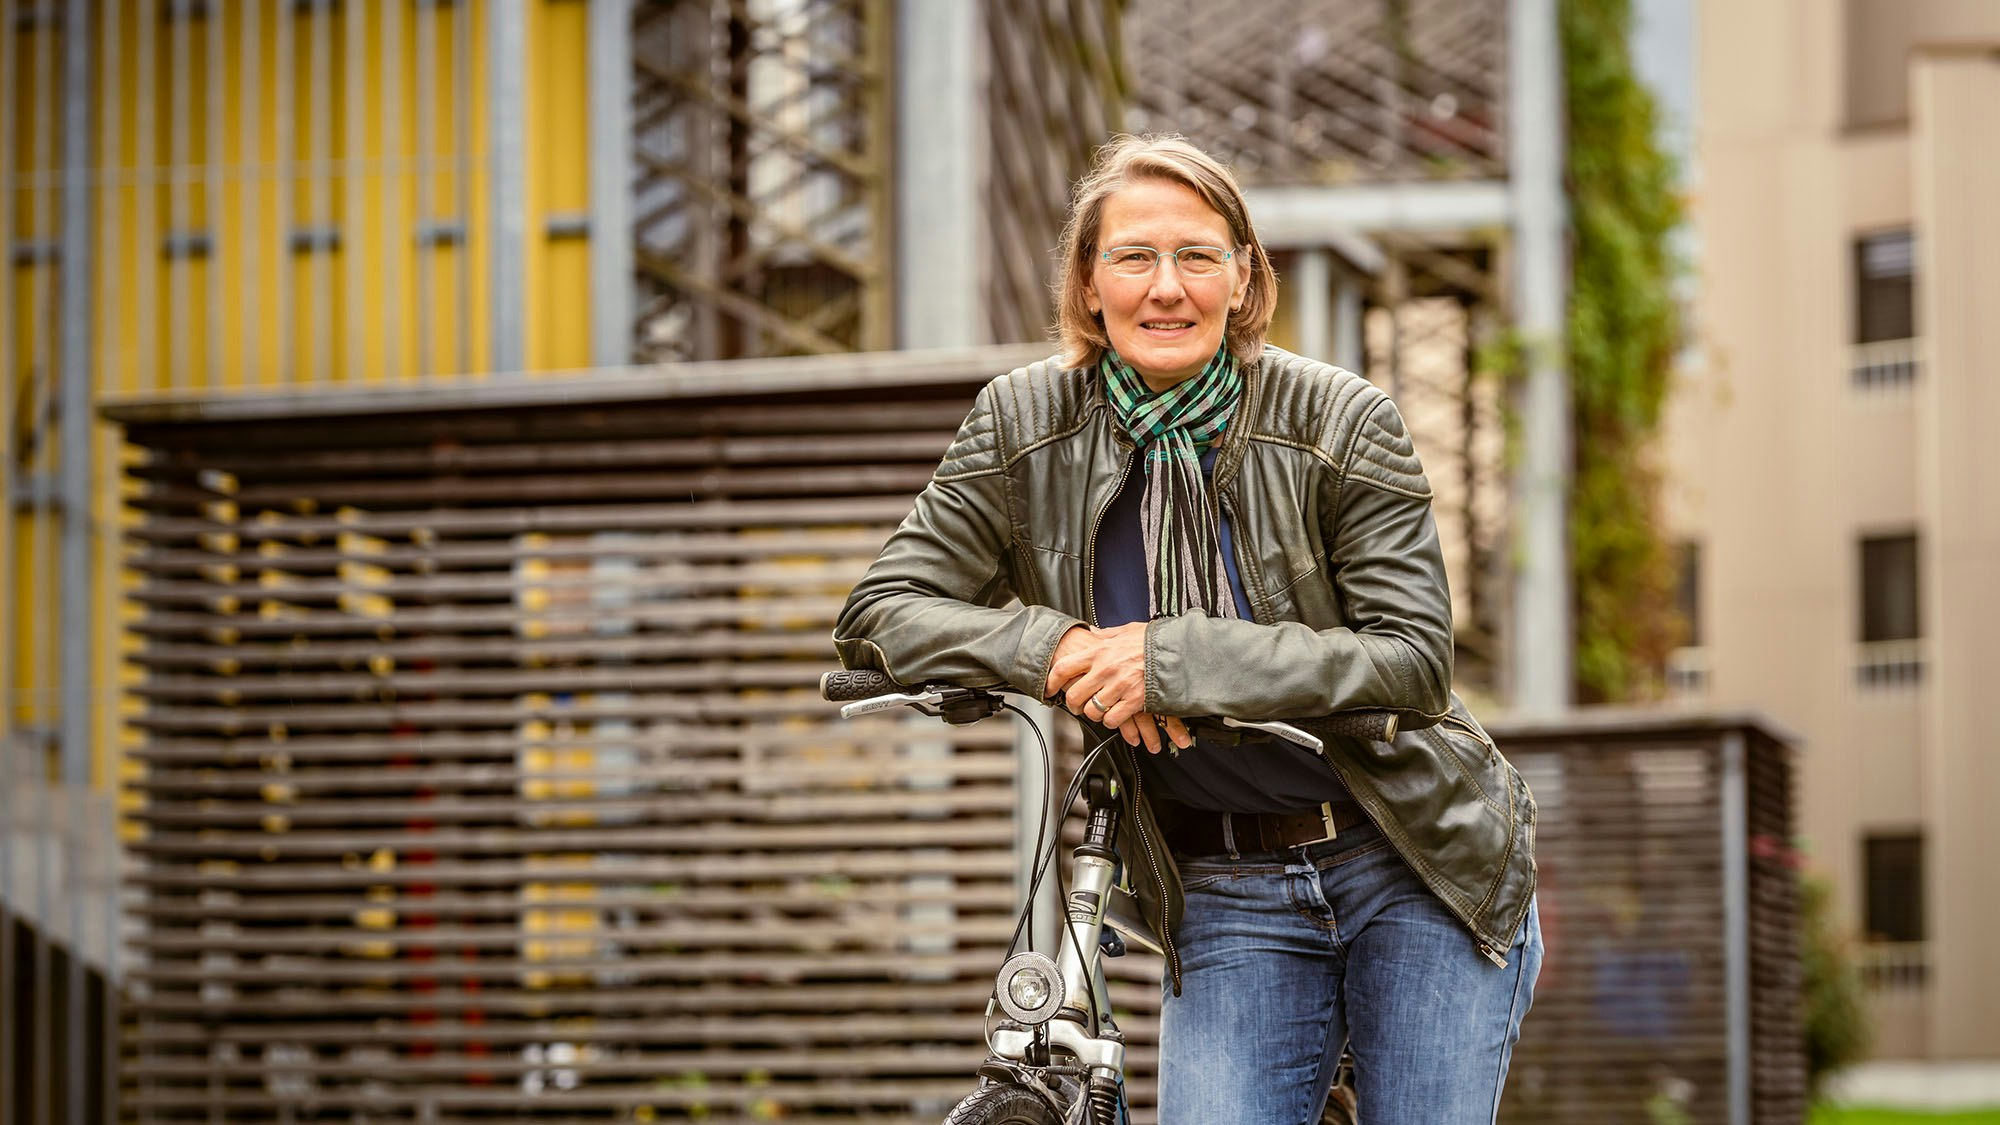 Frau mit Lederjacke steht vor einem Wohnhaus an ihr Fahrrad gelehnt..